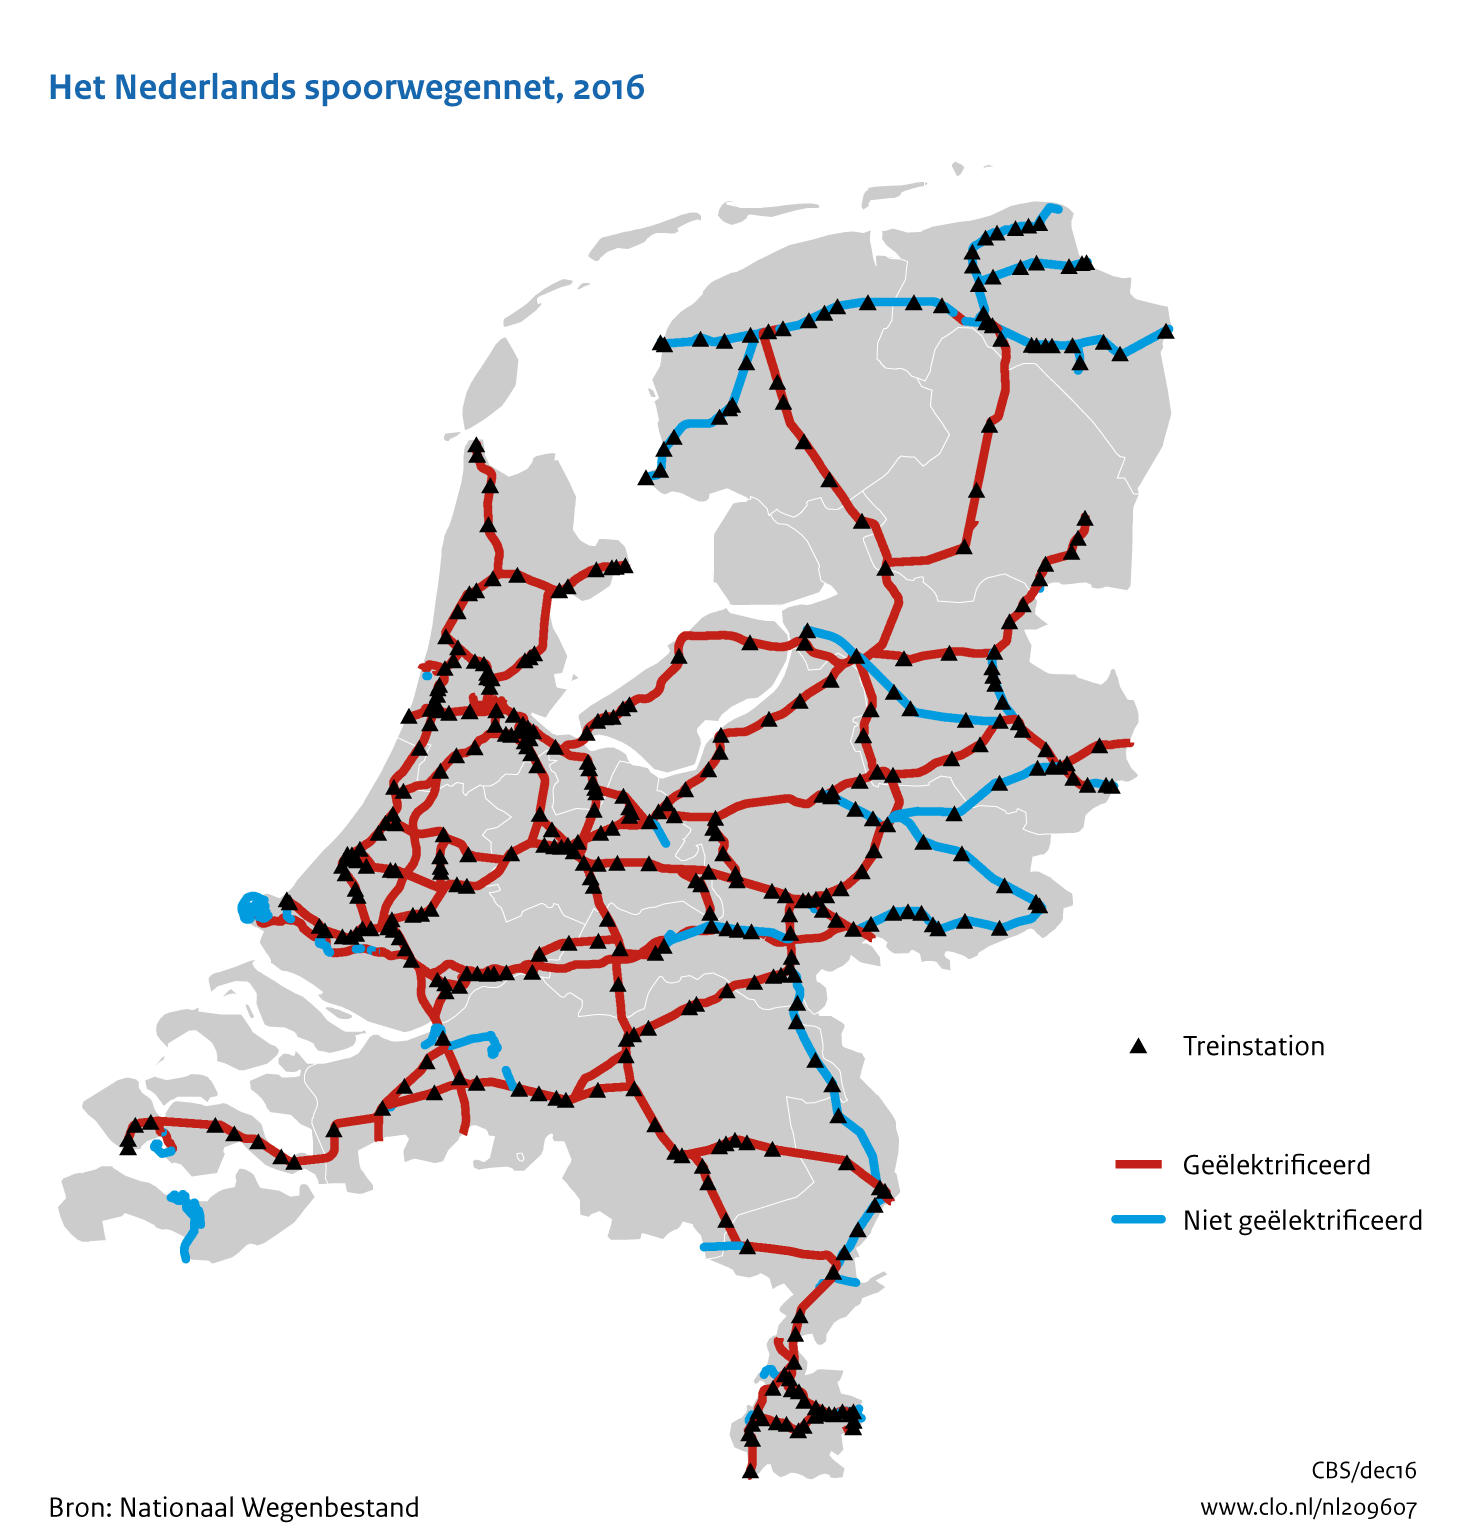 Figuur  Het Nederlandse spoorwegennet, 2016. In de rest van de tekst wordt deze figuur uitgebreider uitgelegd.